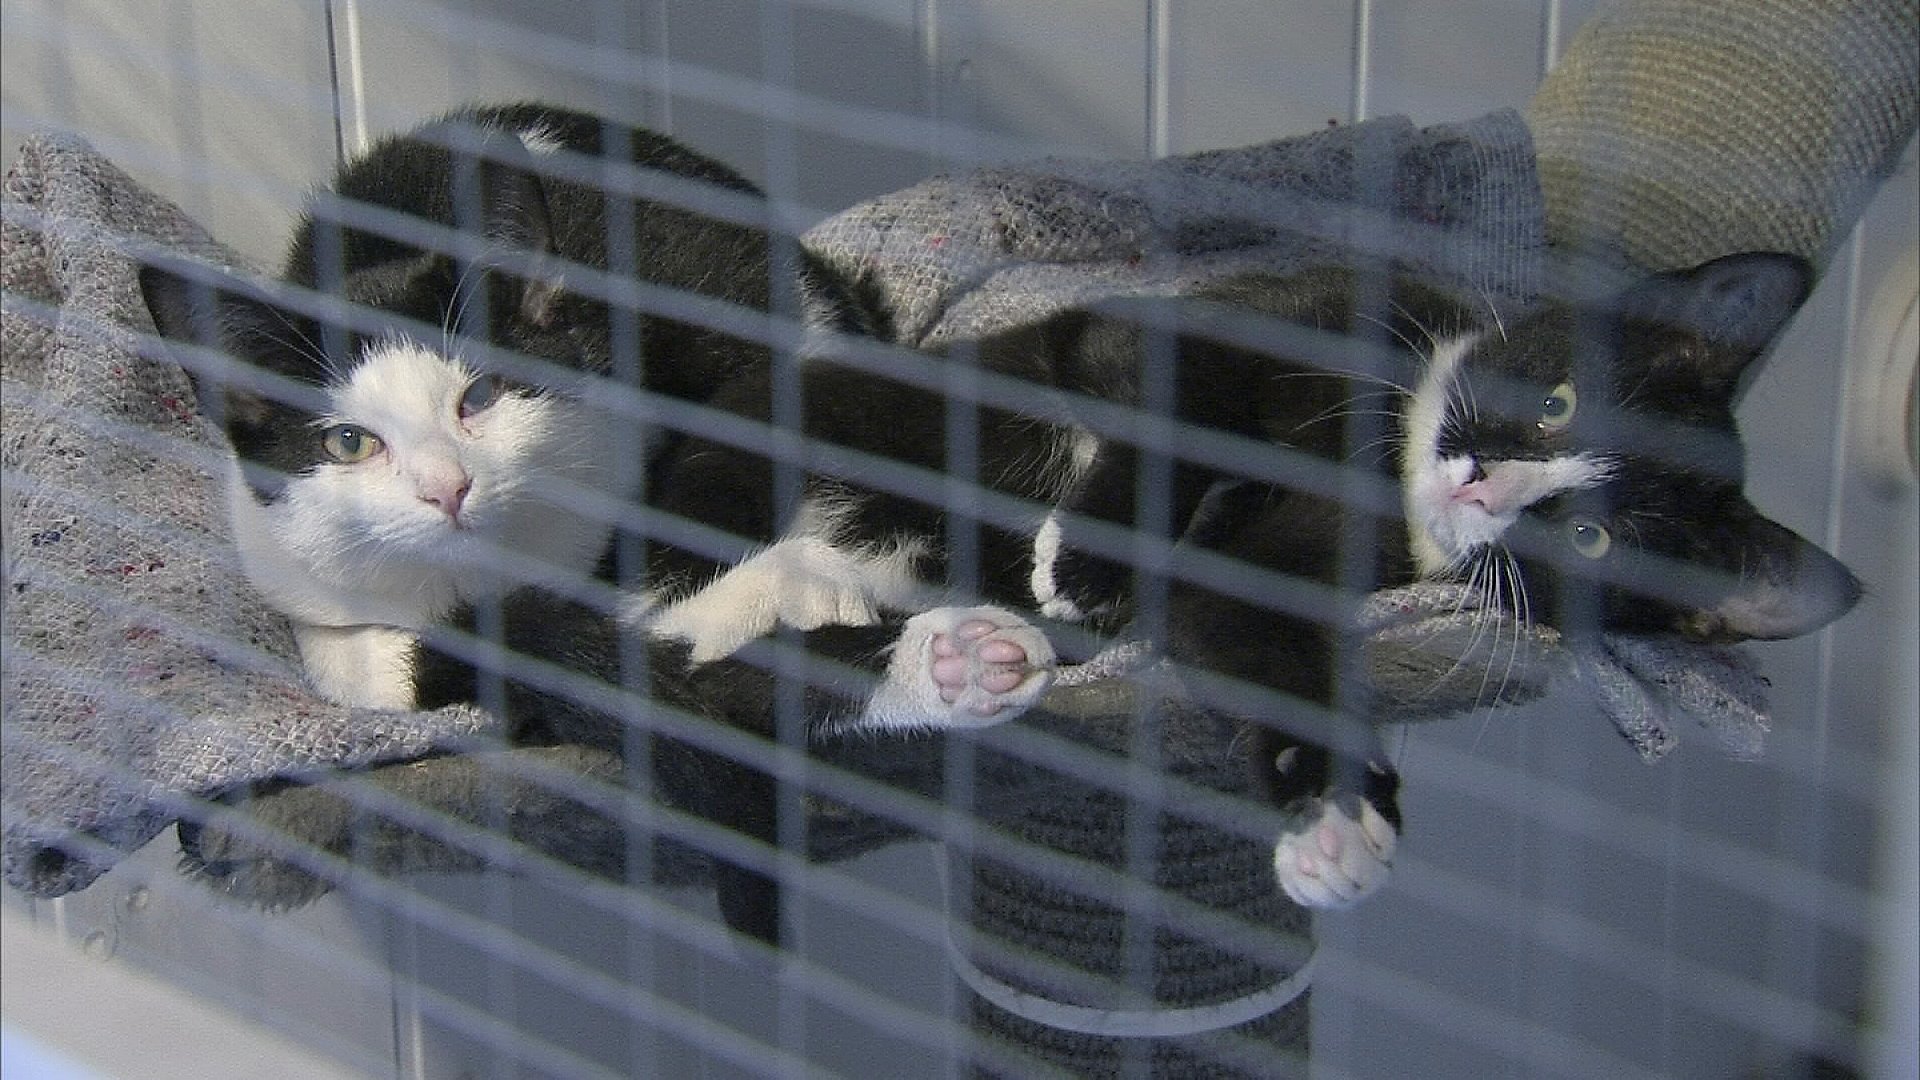 400 katte har boet i kælder – åbner hun et | TV2 Nord